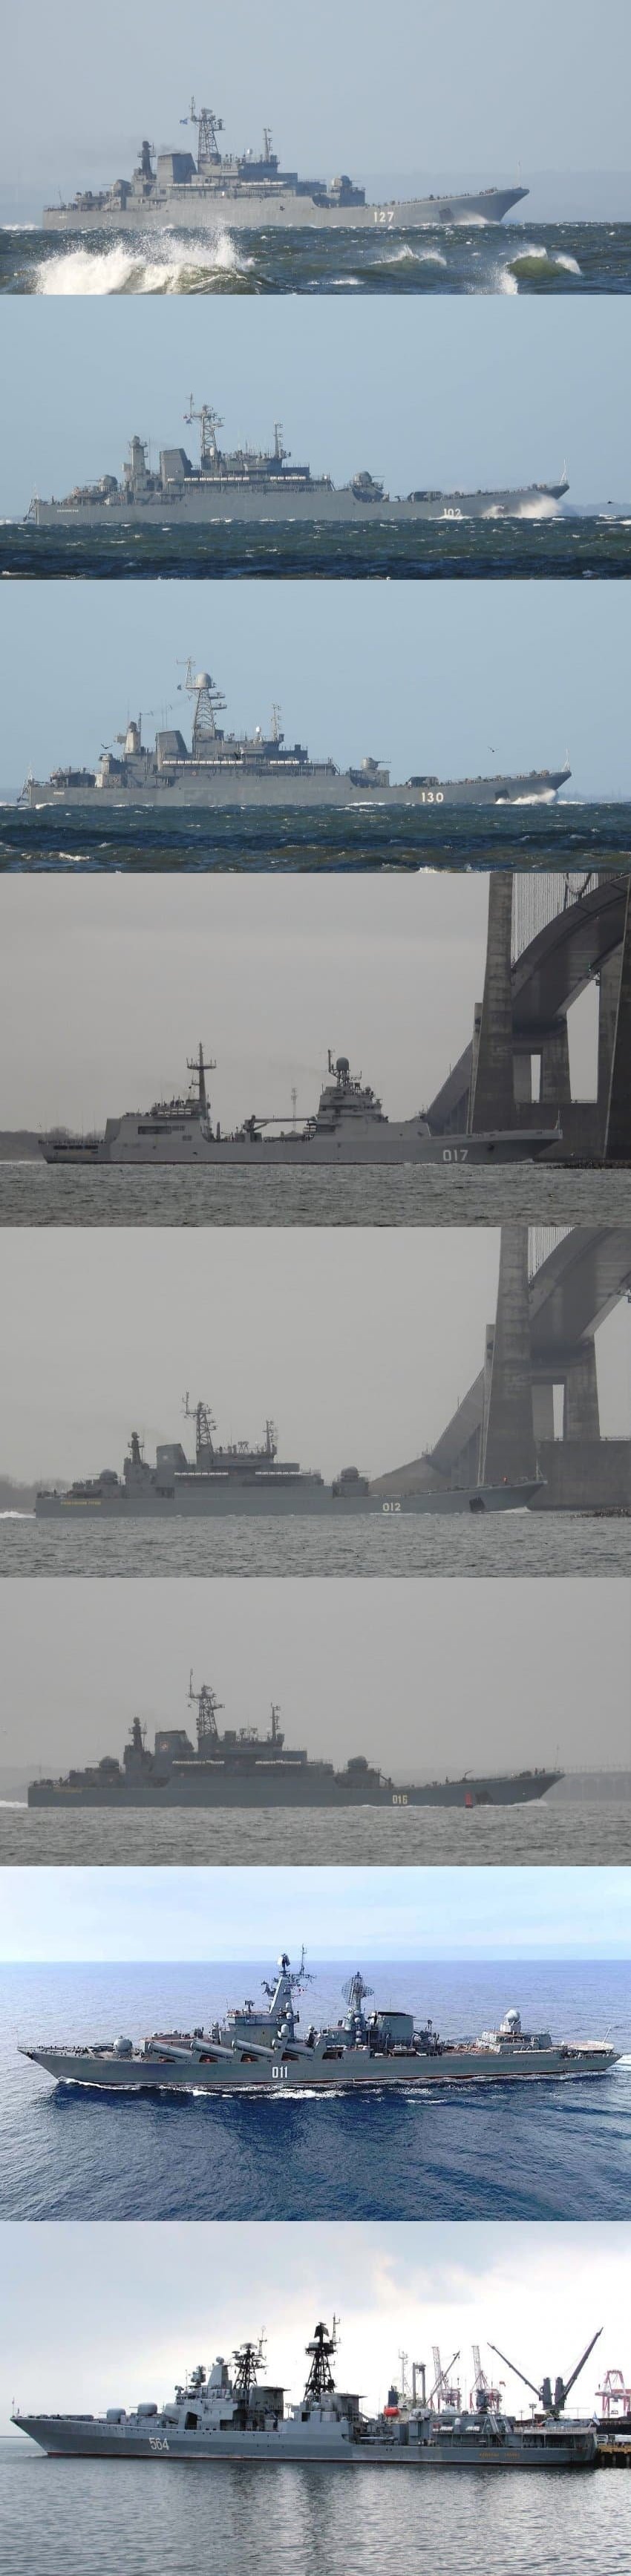 속보) 러시아 해군 흑해 집결중